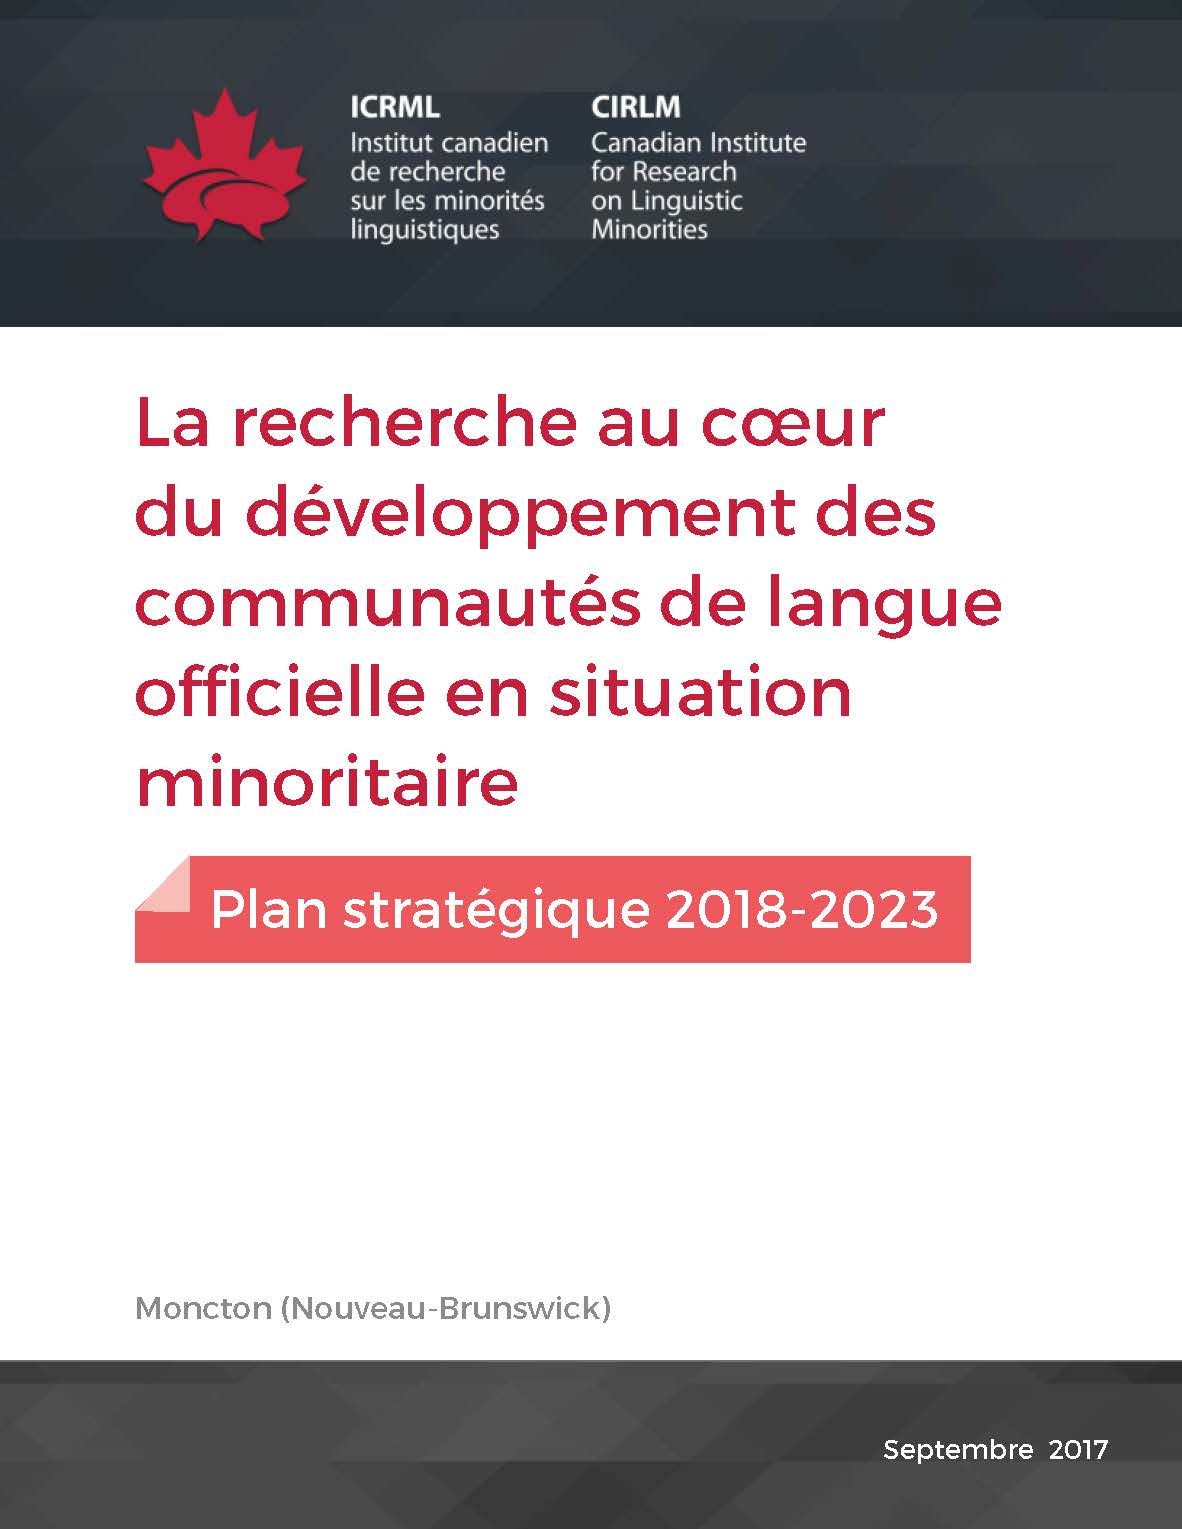 Pages de Plan ICRML 2018 2023